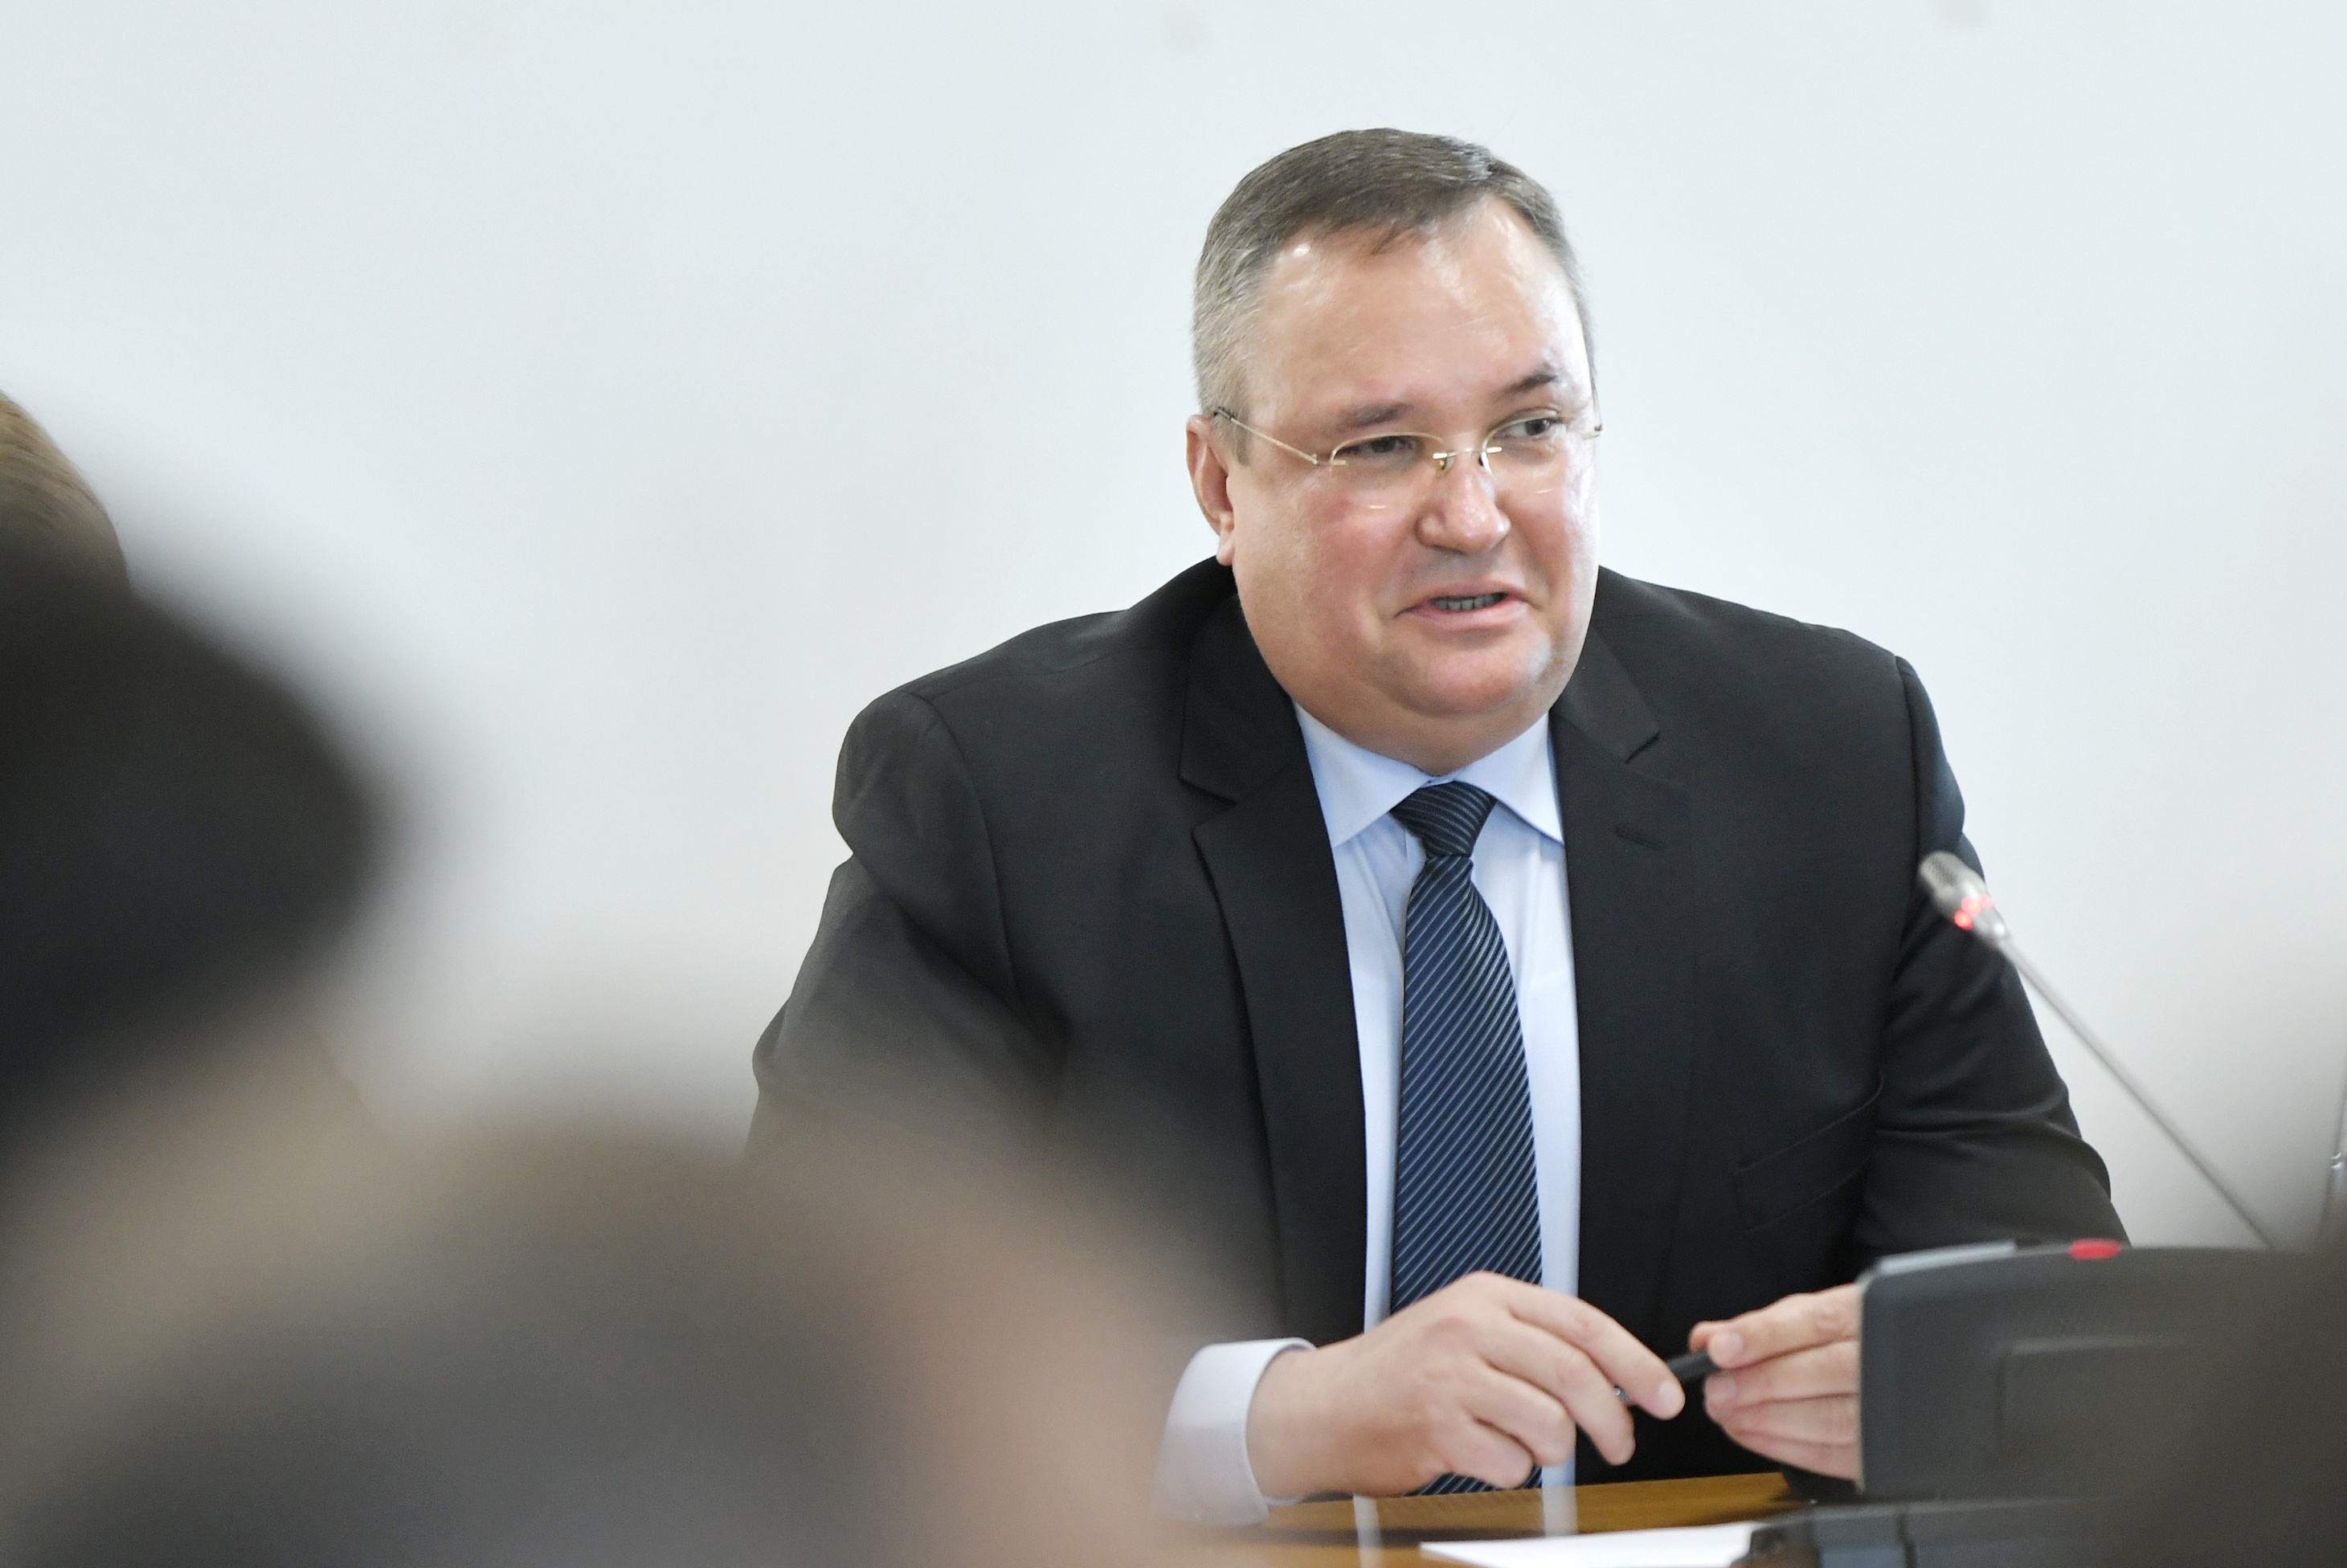 PNL propune un armistiţiu politic: Premierul desemnat Nicolae Ciucă a trimis o ofertă partidelor parlamentare a unui guvern minoritar PNL-UDMR